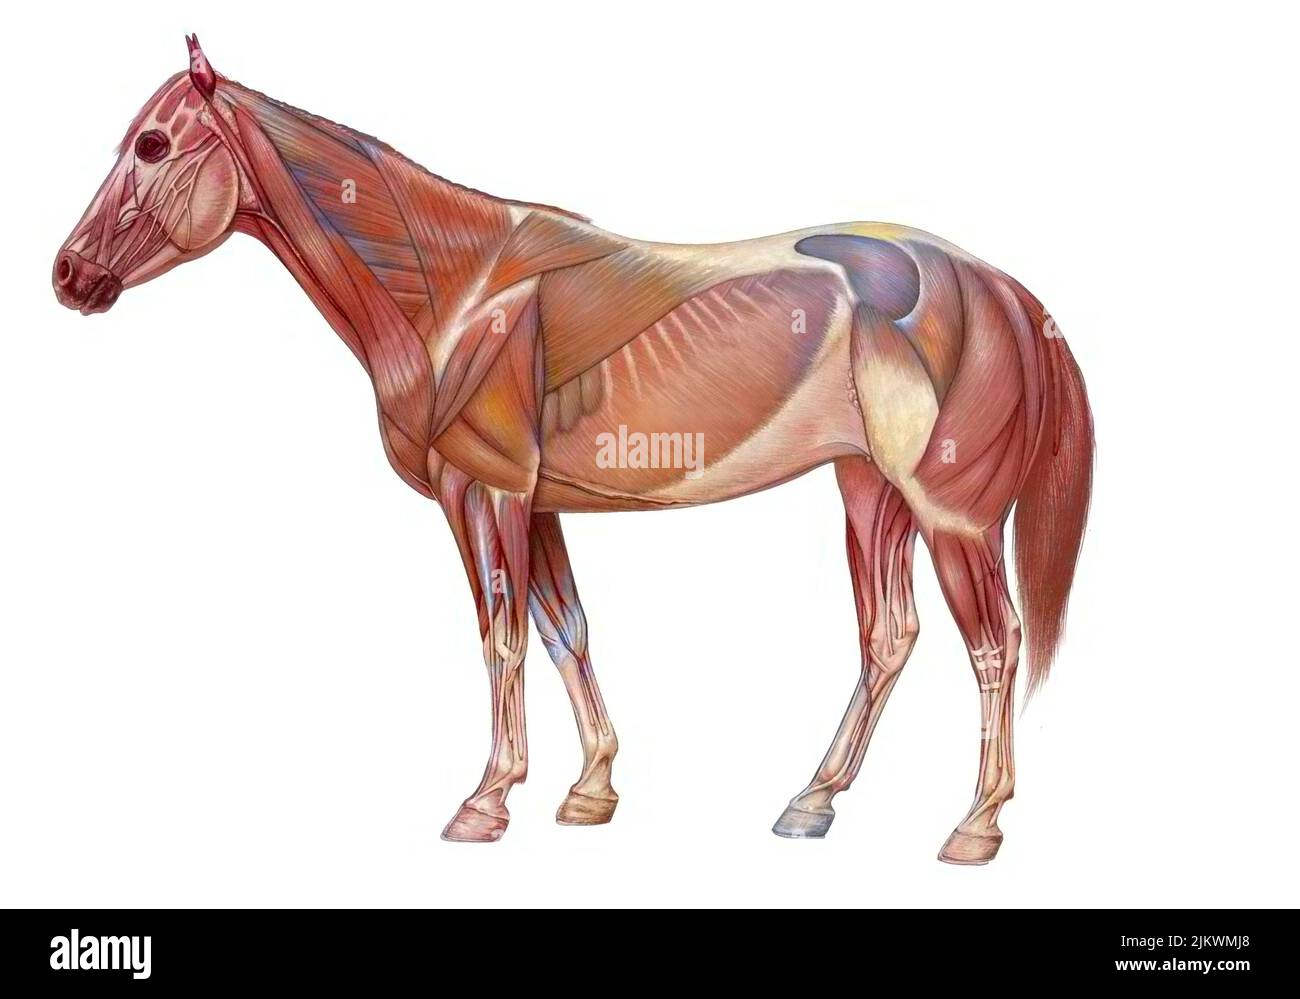 Anatomie du cheval avec son système musculaire. Banque D'Images